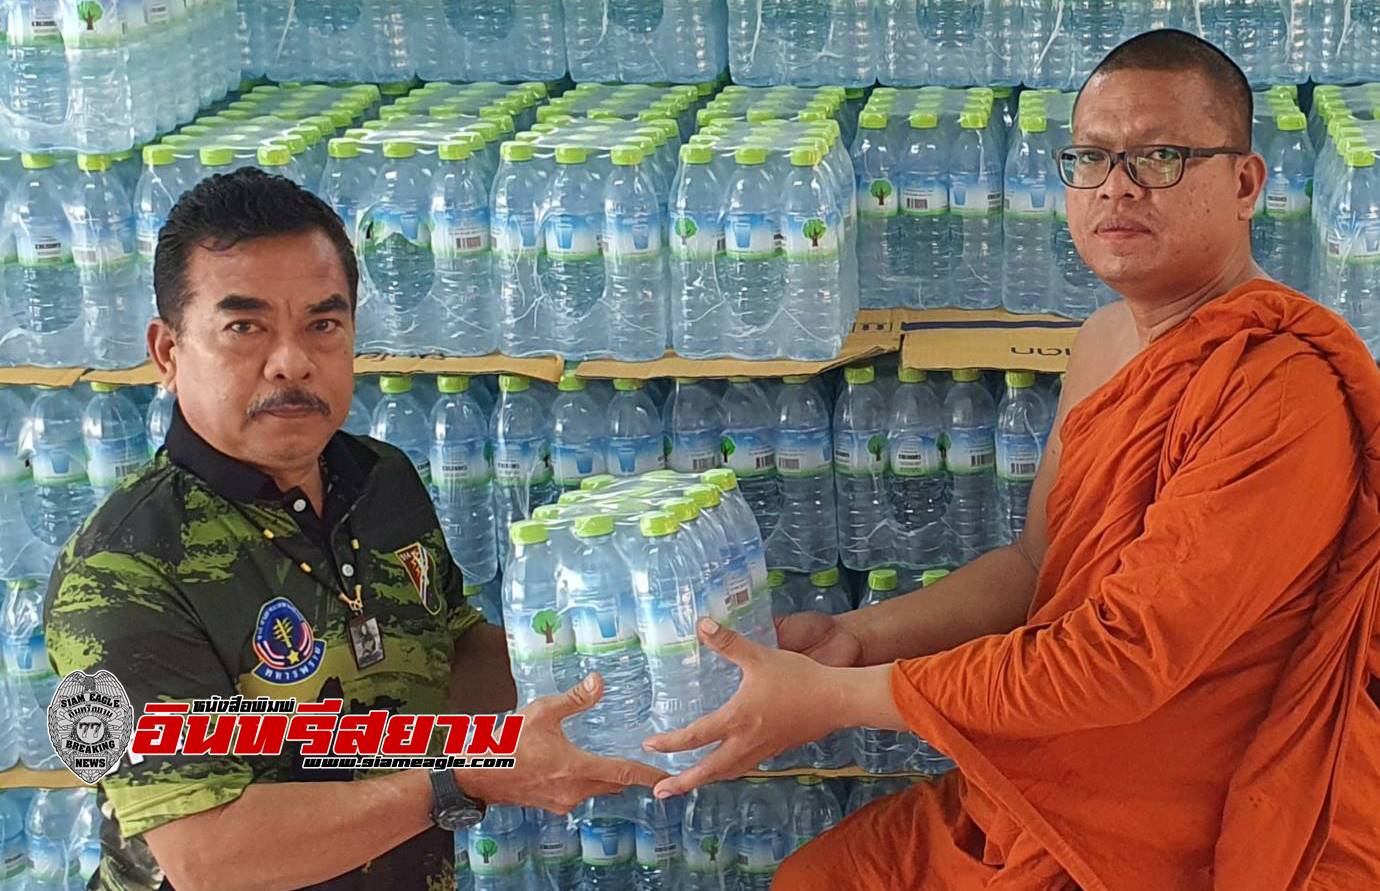 ลพบุรี-นักข่าวลพบุรีห่วงใยประชาชนผู้ประสบอุทกภัยมอบน้ำดื่มจำนวน 1,000 โหล ให้กับพระครูสมุห์พรเทพ